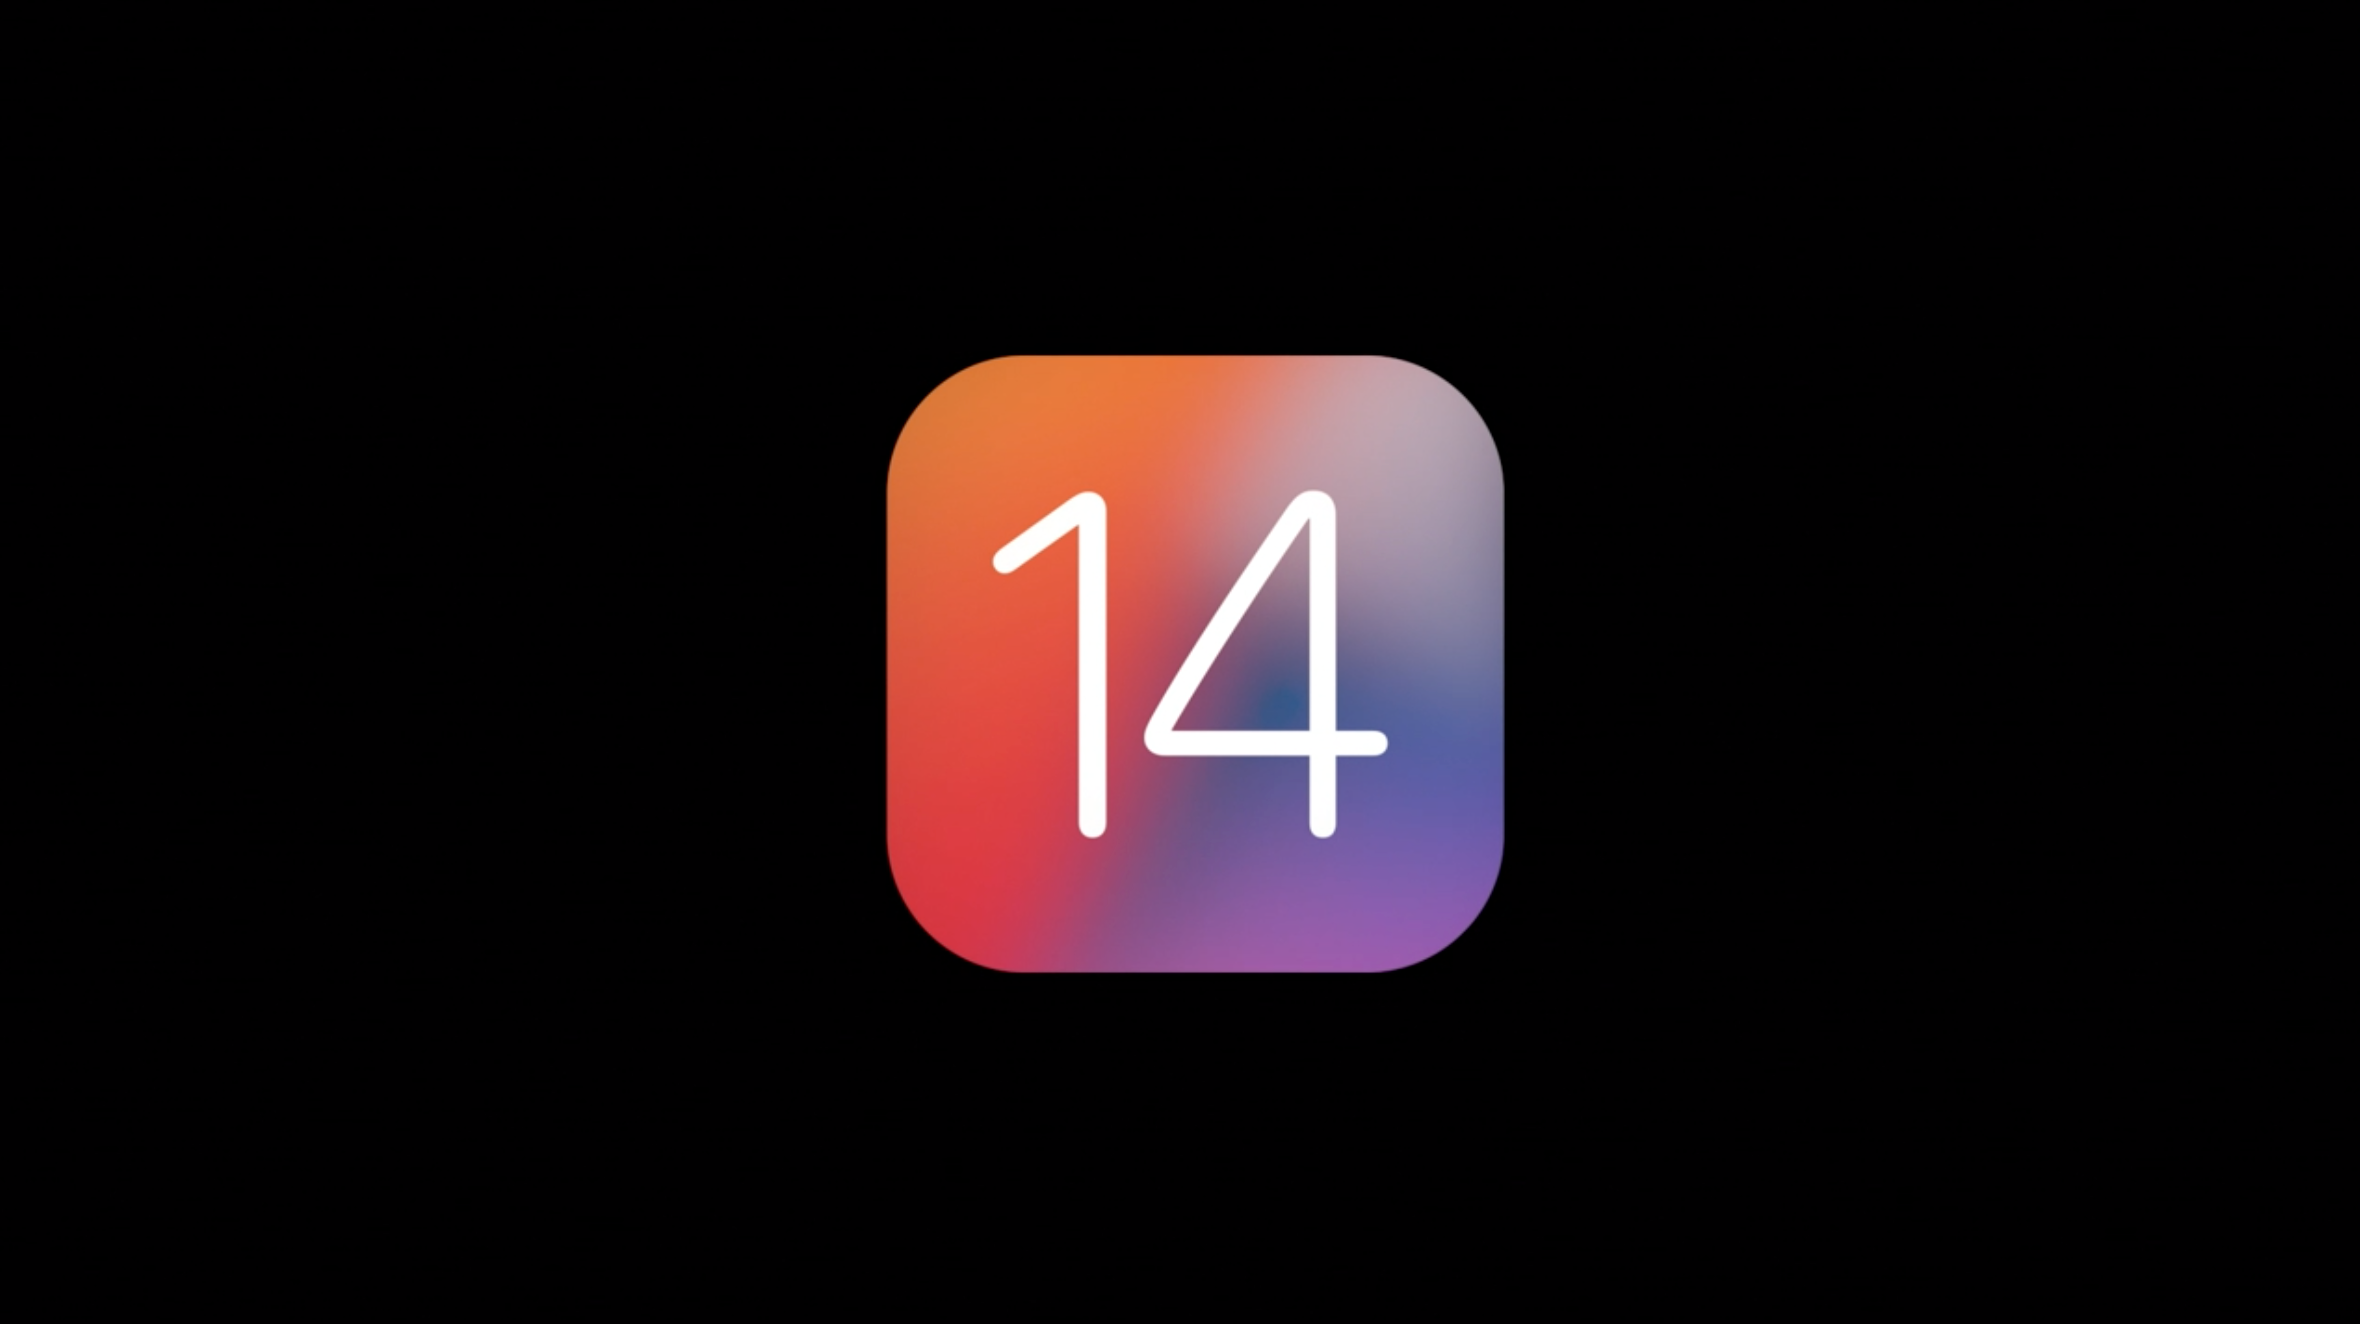 苹果正式发布 iOS 14：主屏幕大改进，多个新功能